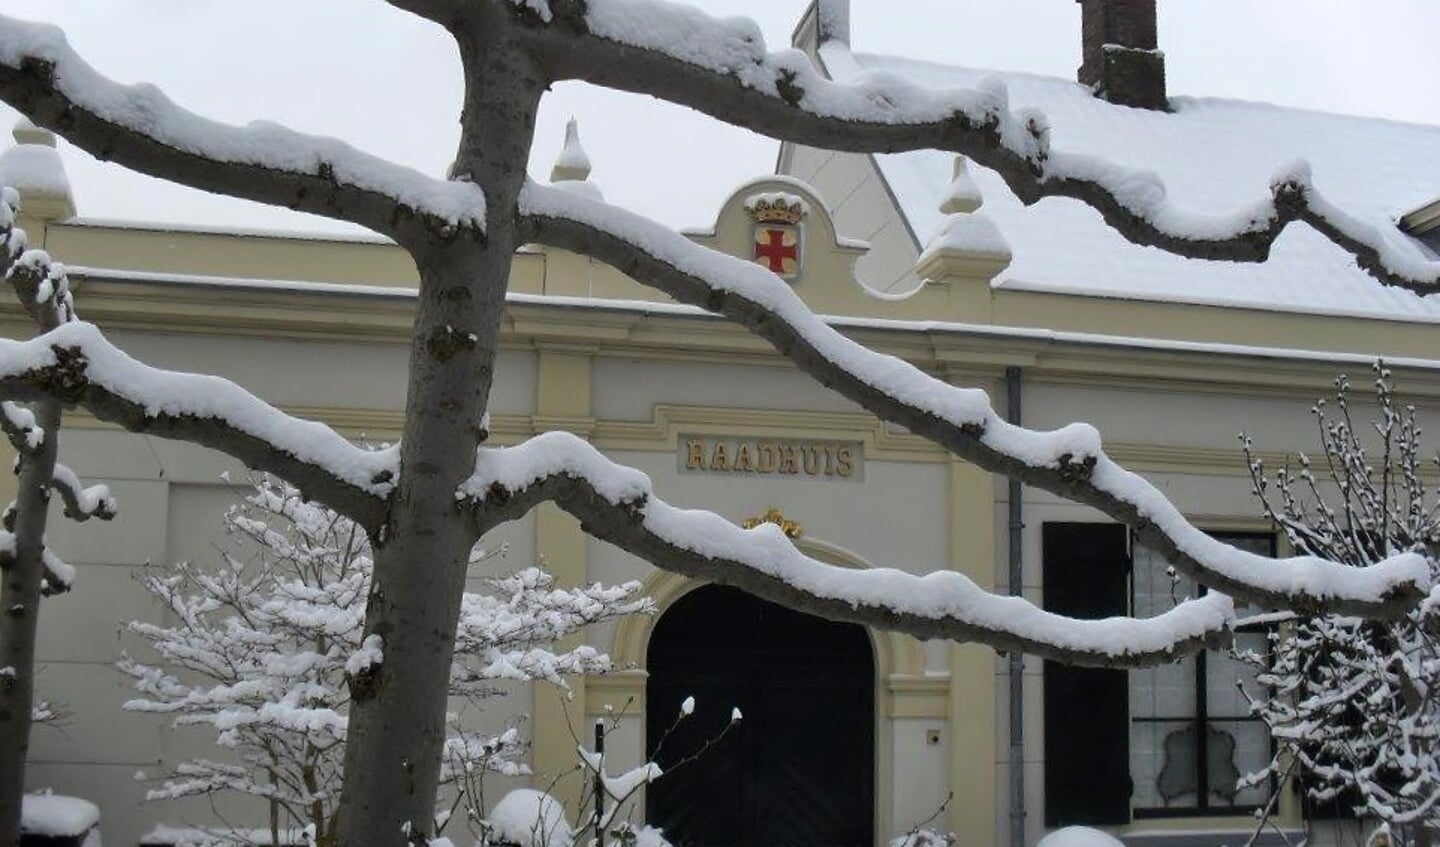 Oude Raadhuis in de sneeuw. | Foto Wim van Tuijl